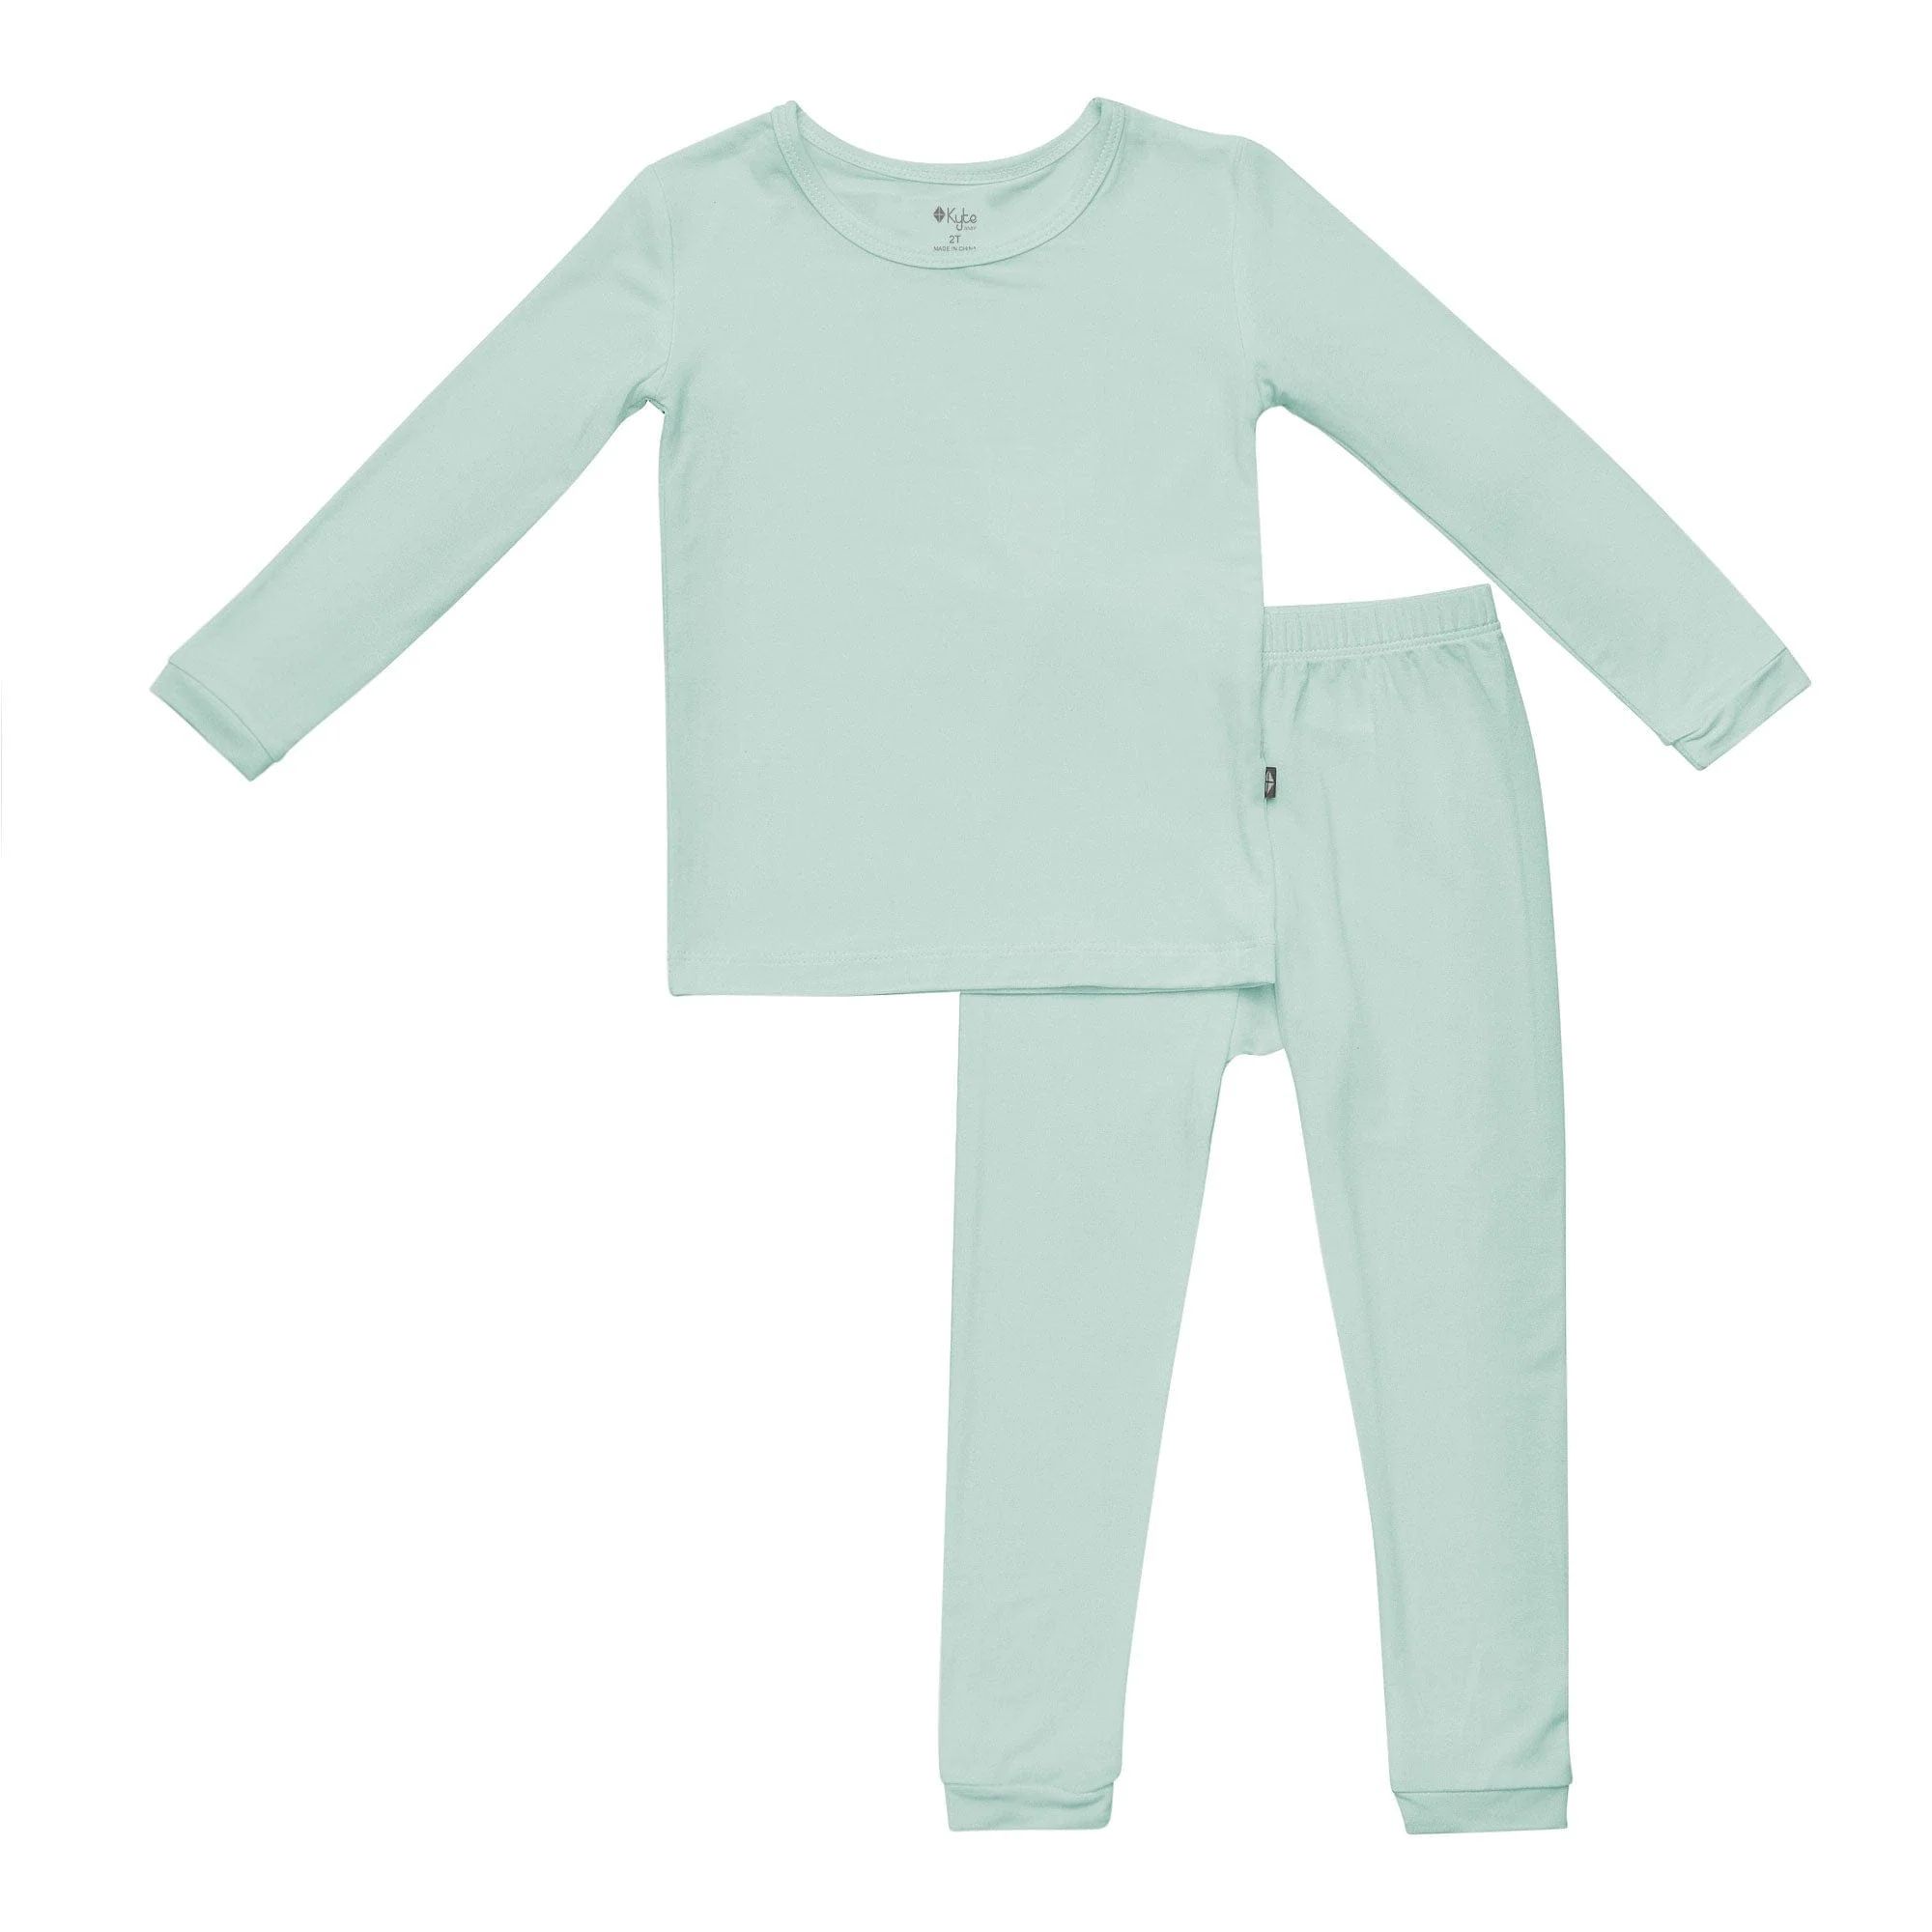 Toddler Pajama Set in Sage | Kyte BABY